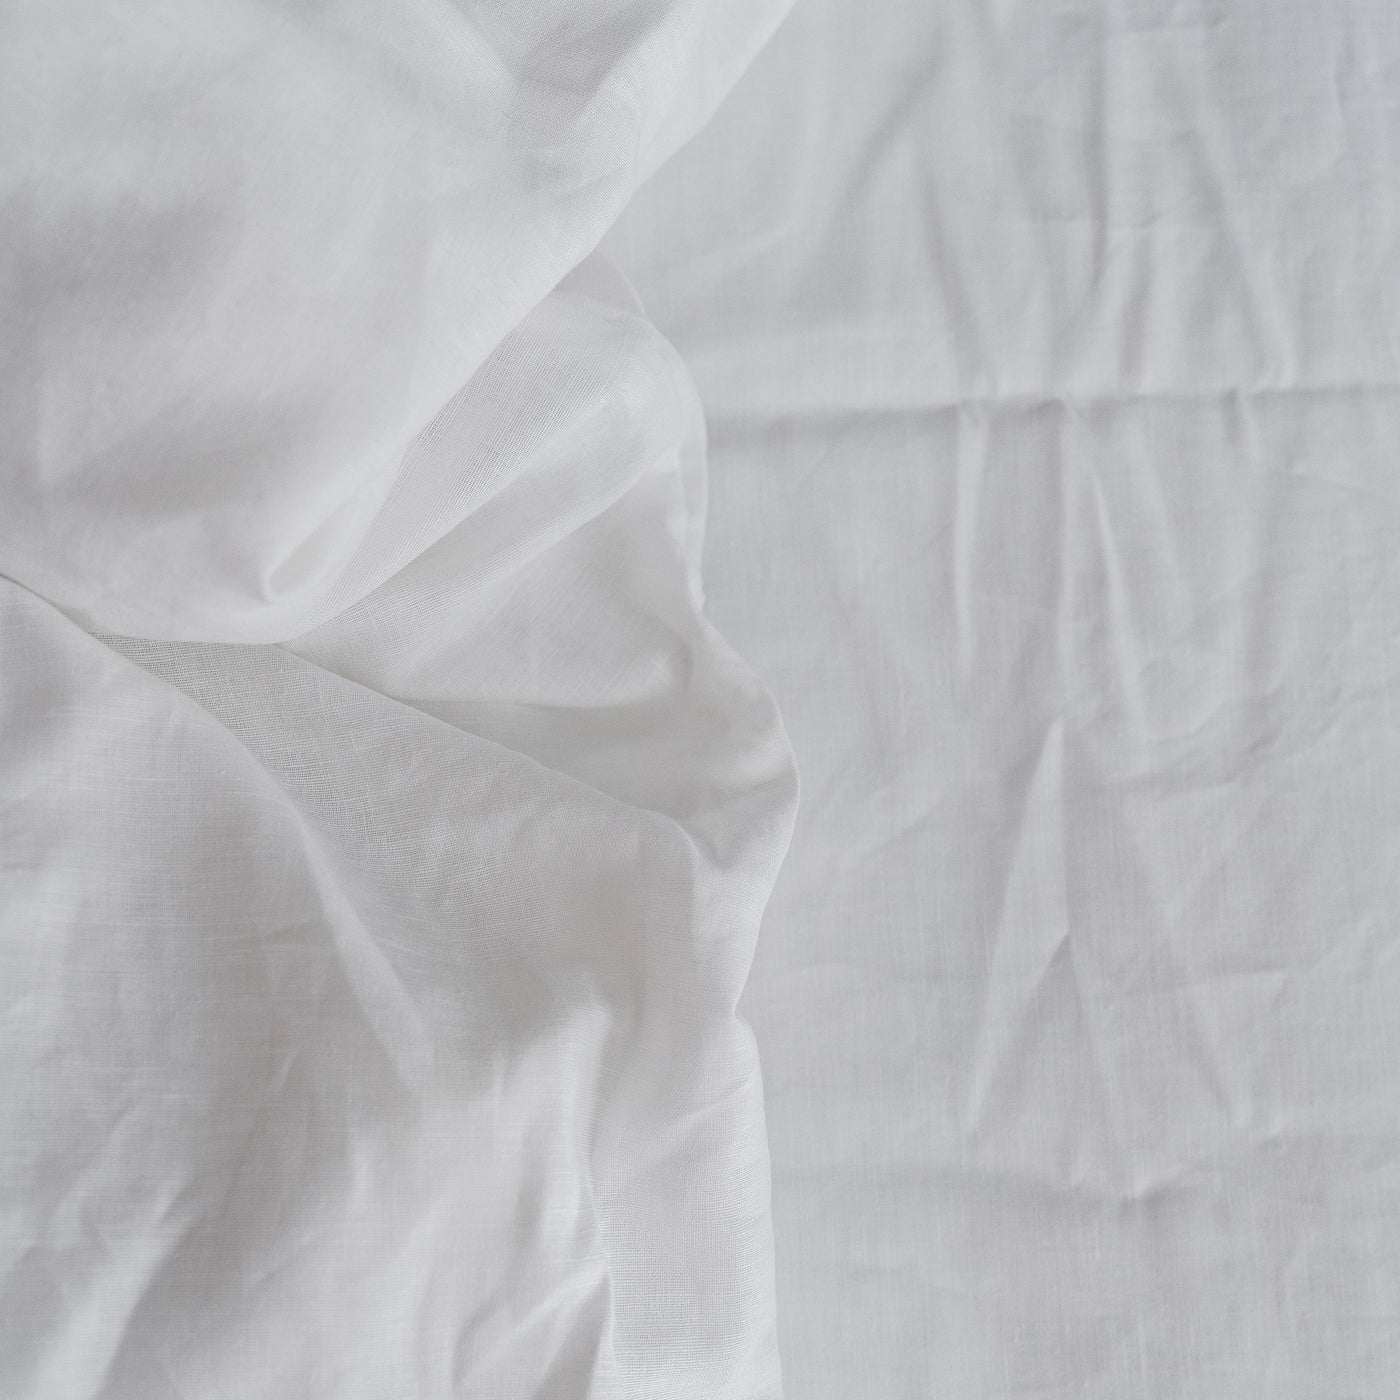 Acquista il lenzuolo matrimoniale Premium 100% lino in bianco ottico 4